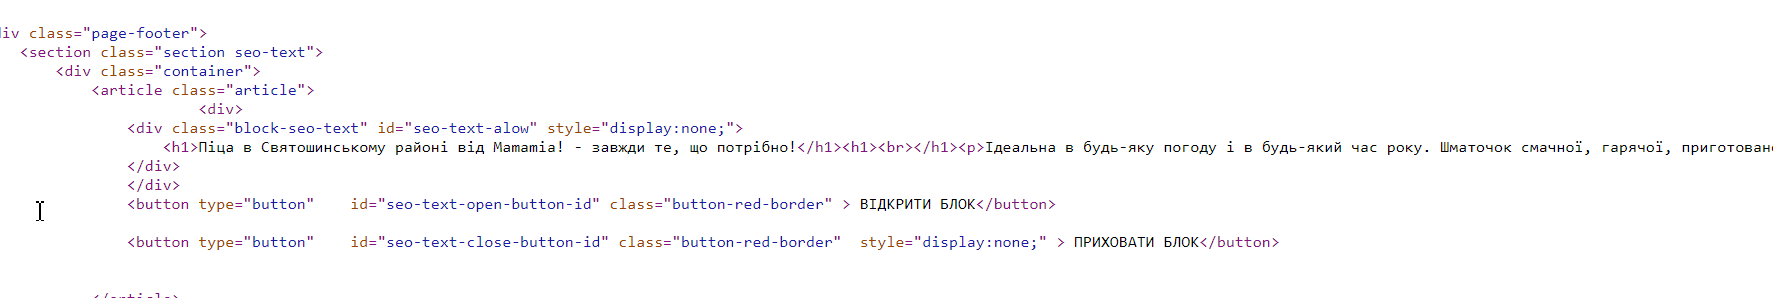 Приклад коду сторінки сайту.